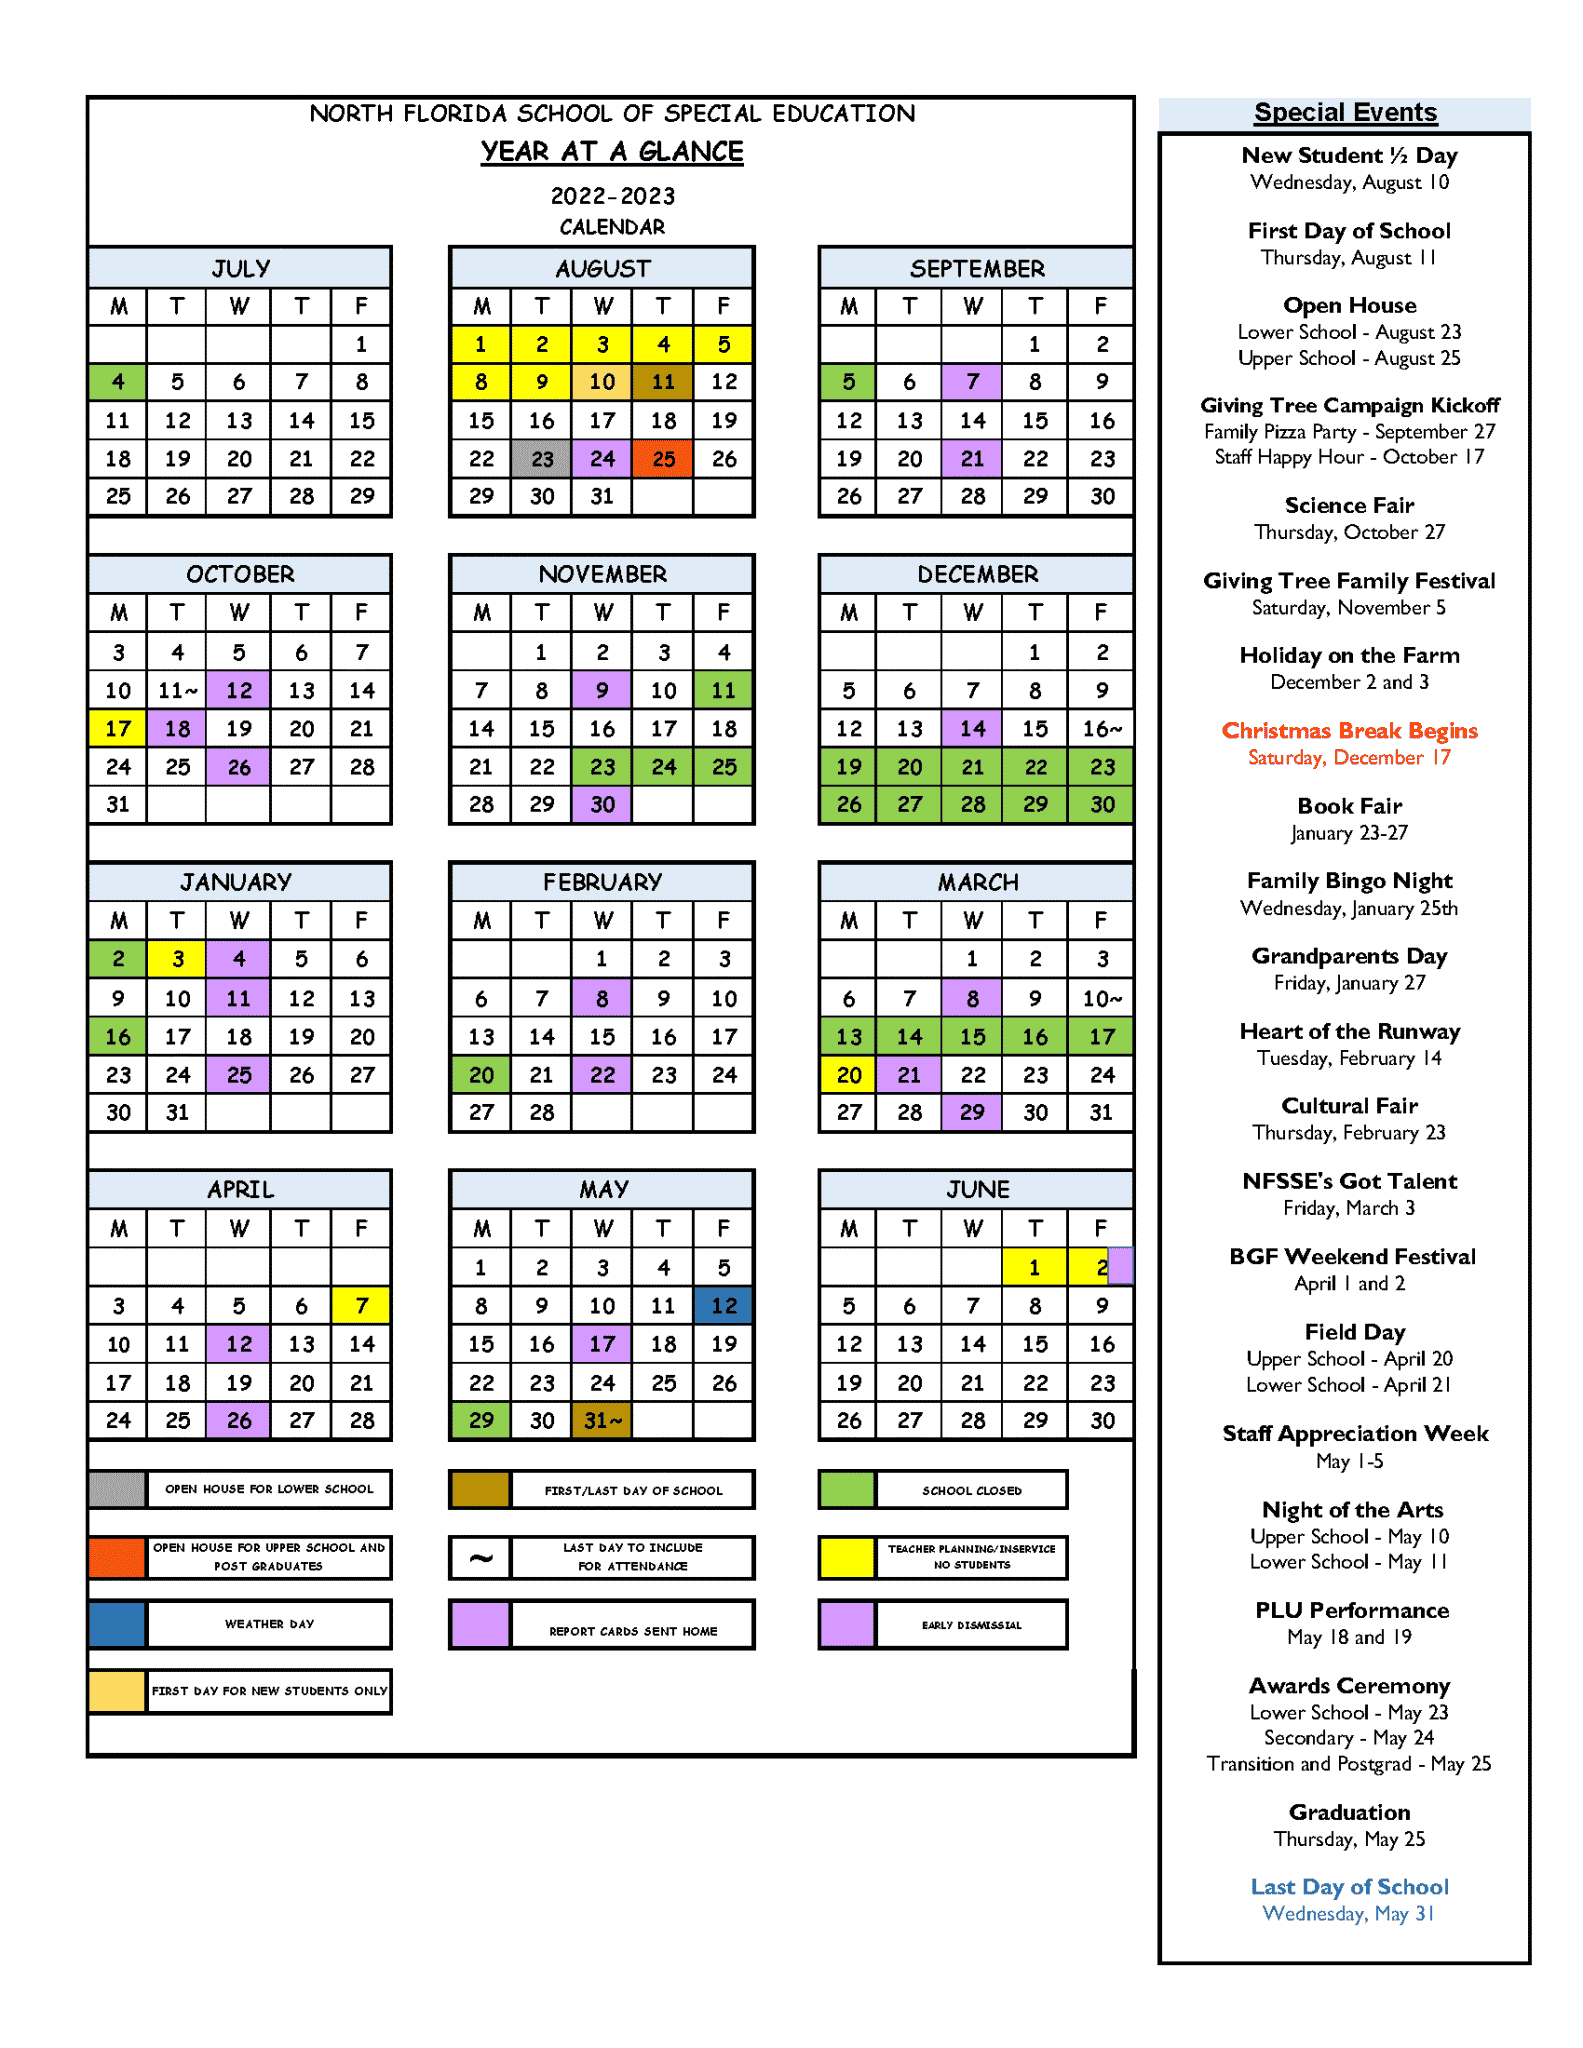 School Calendar - North Florida School of Special Education